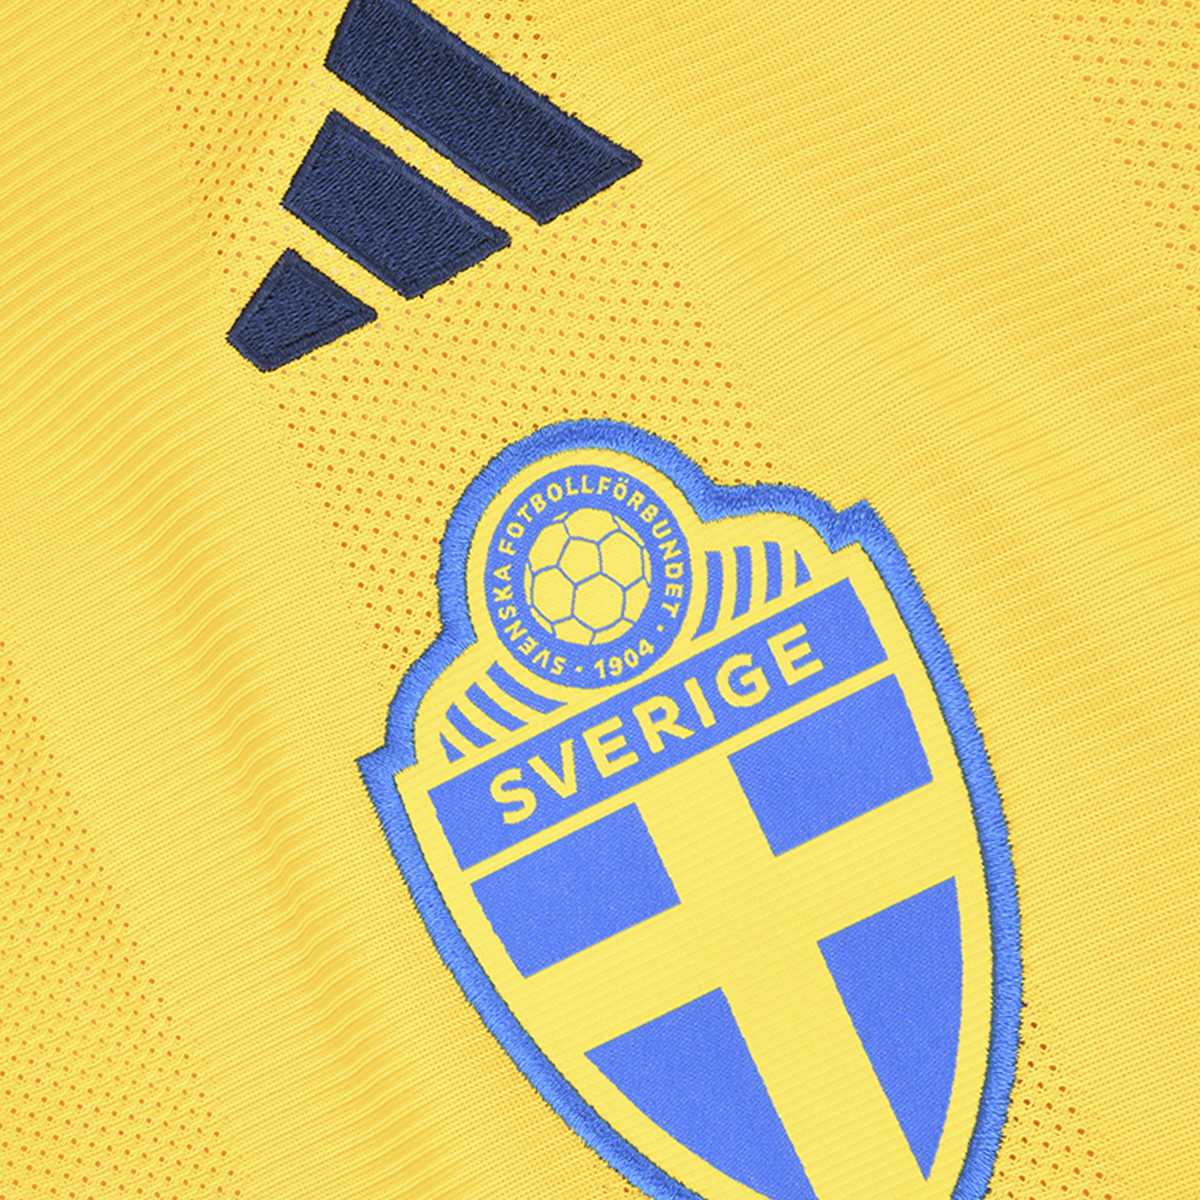 Camiseta Fútbol adidas Suecia Titular 22 Hombre,  image number null